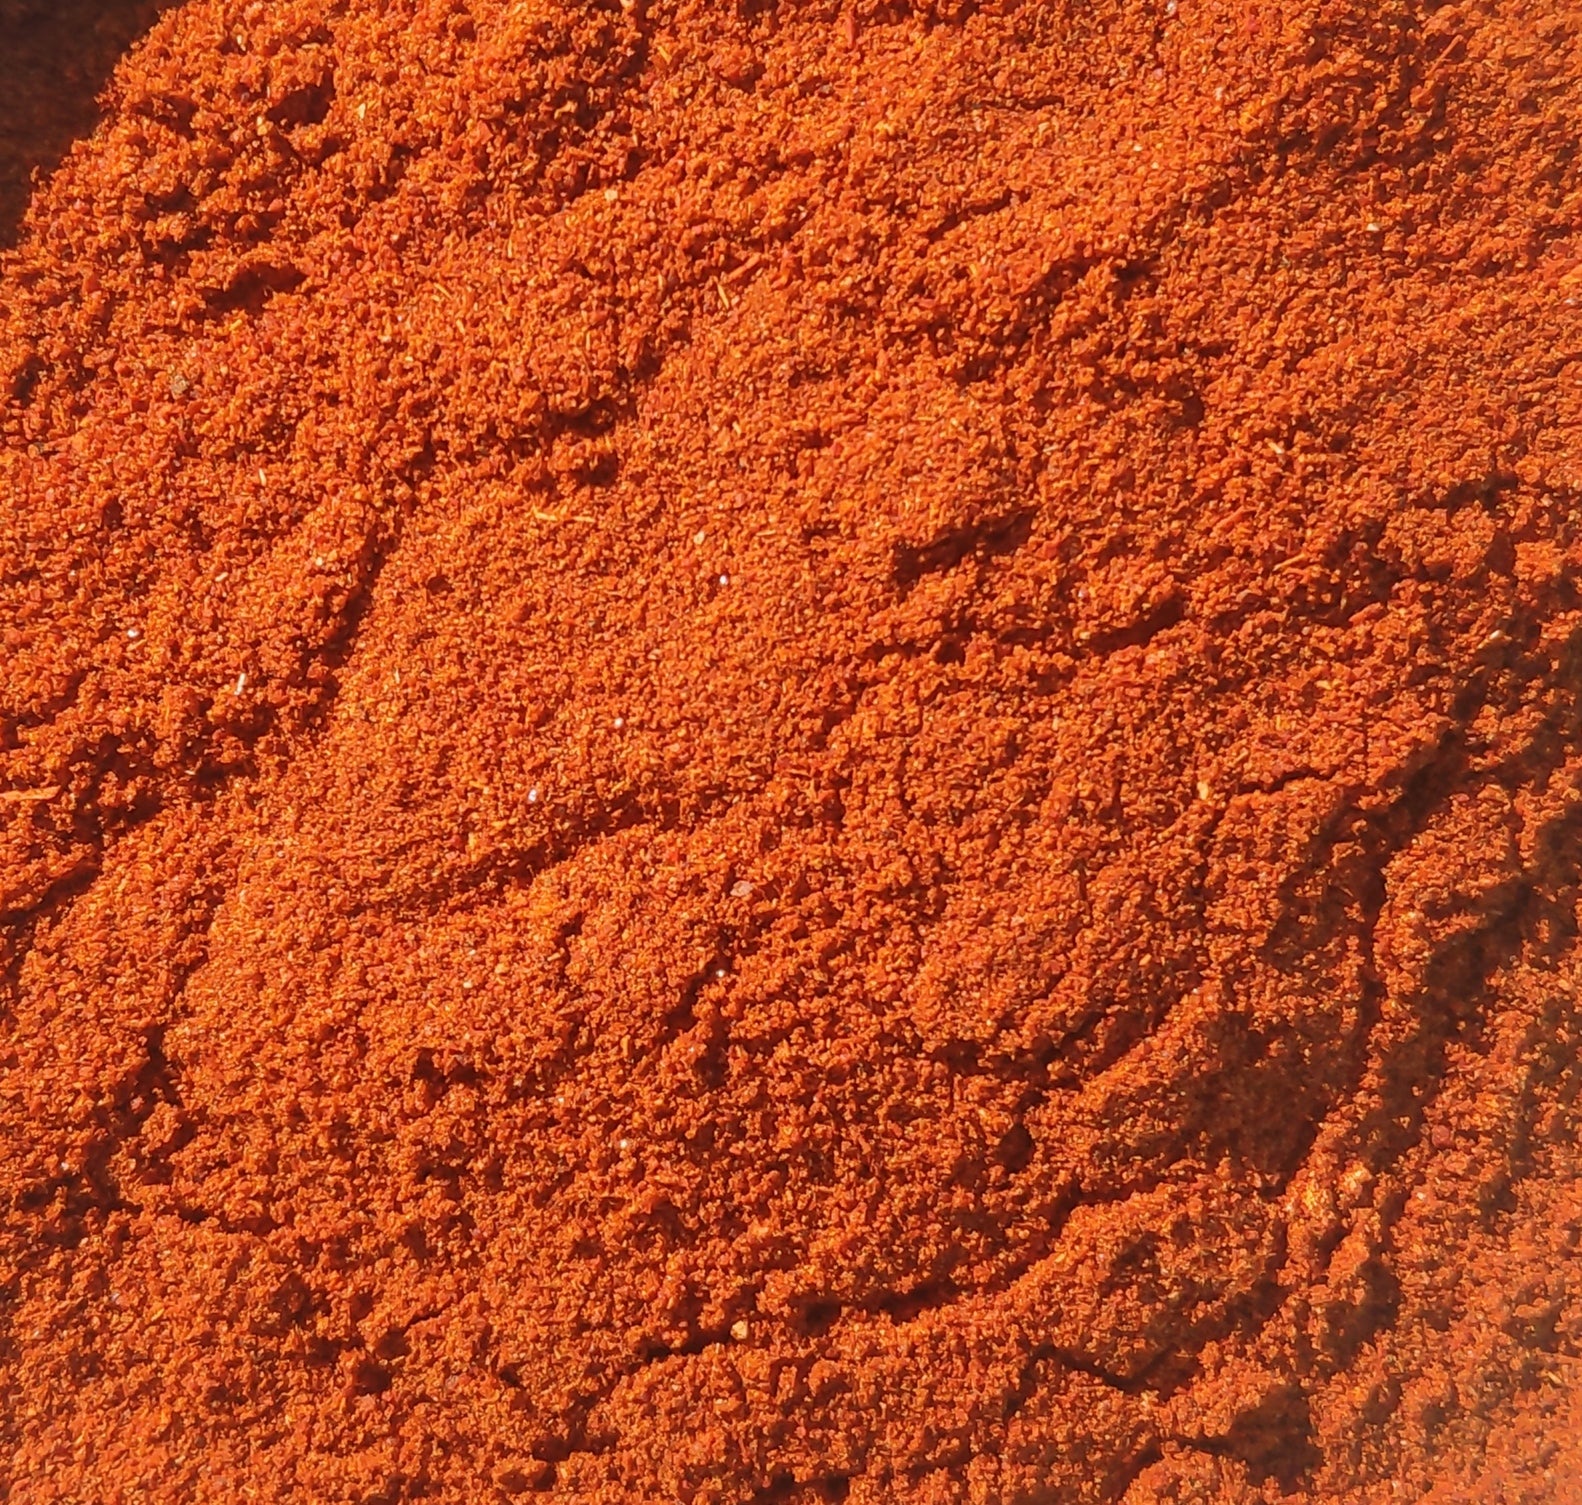 "Chili Con Carne" Spice Mix